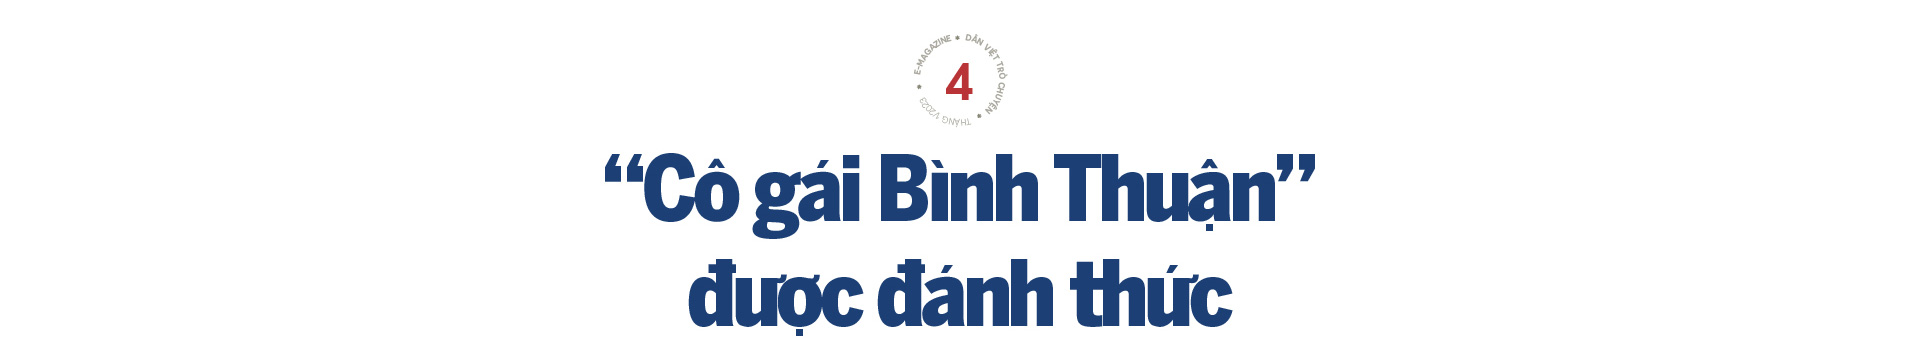 Bí thư Dương Văn An và câu chuyện hoá giải điểm nghẽn ở Bình Thuận - Ảnh 10.